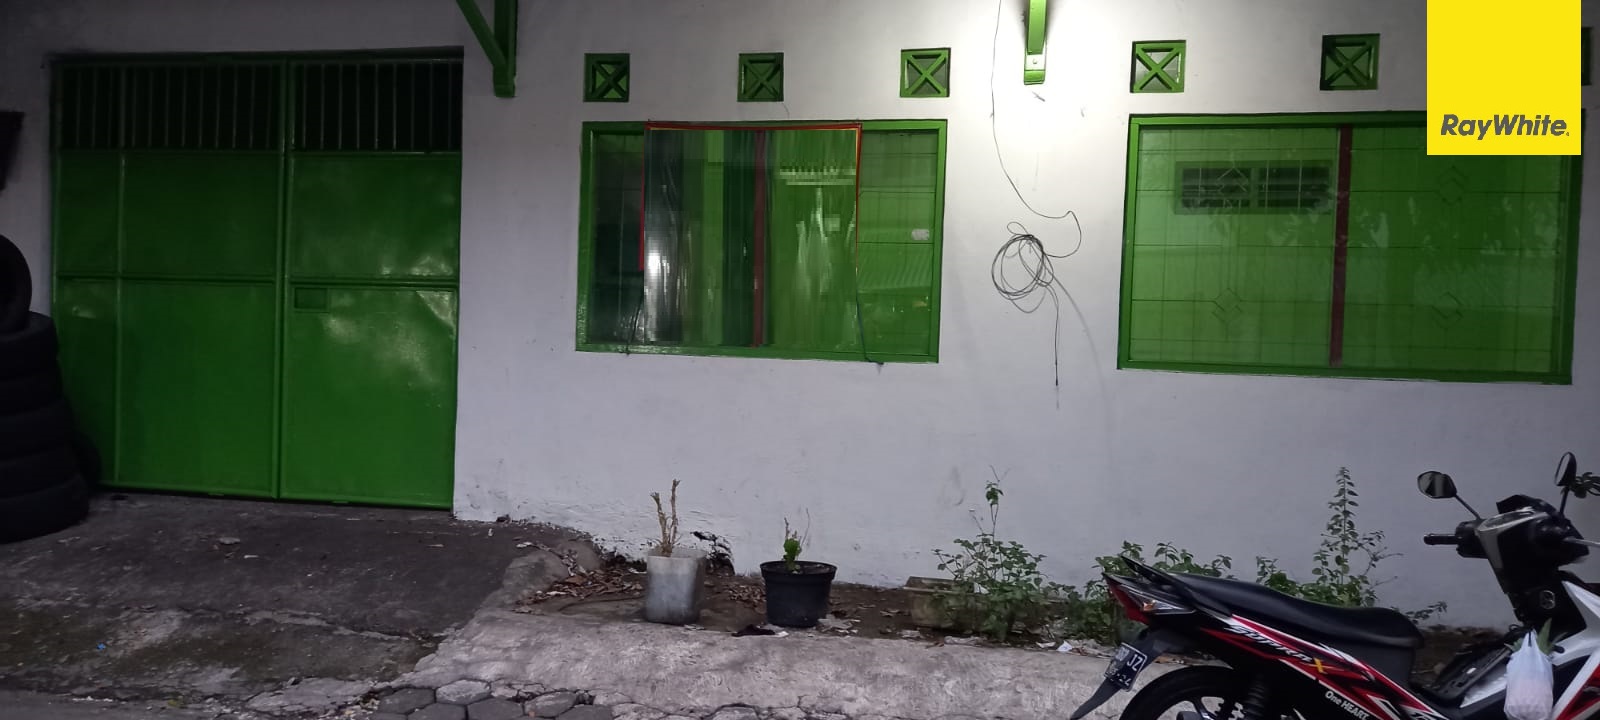 Rumah Disewakan Lokasi Strategis di Jalan Nginden Kota Surabaya